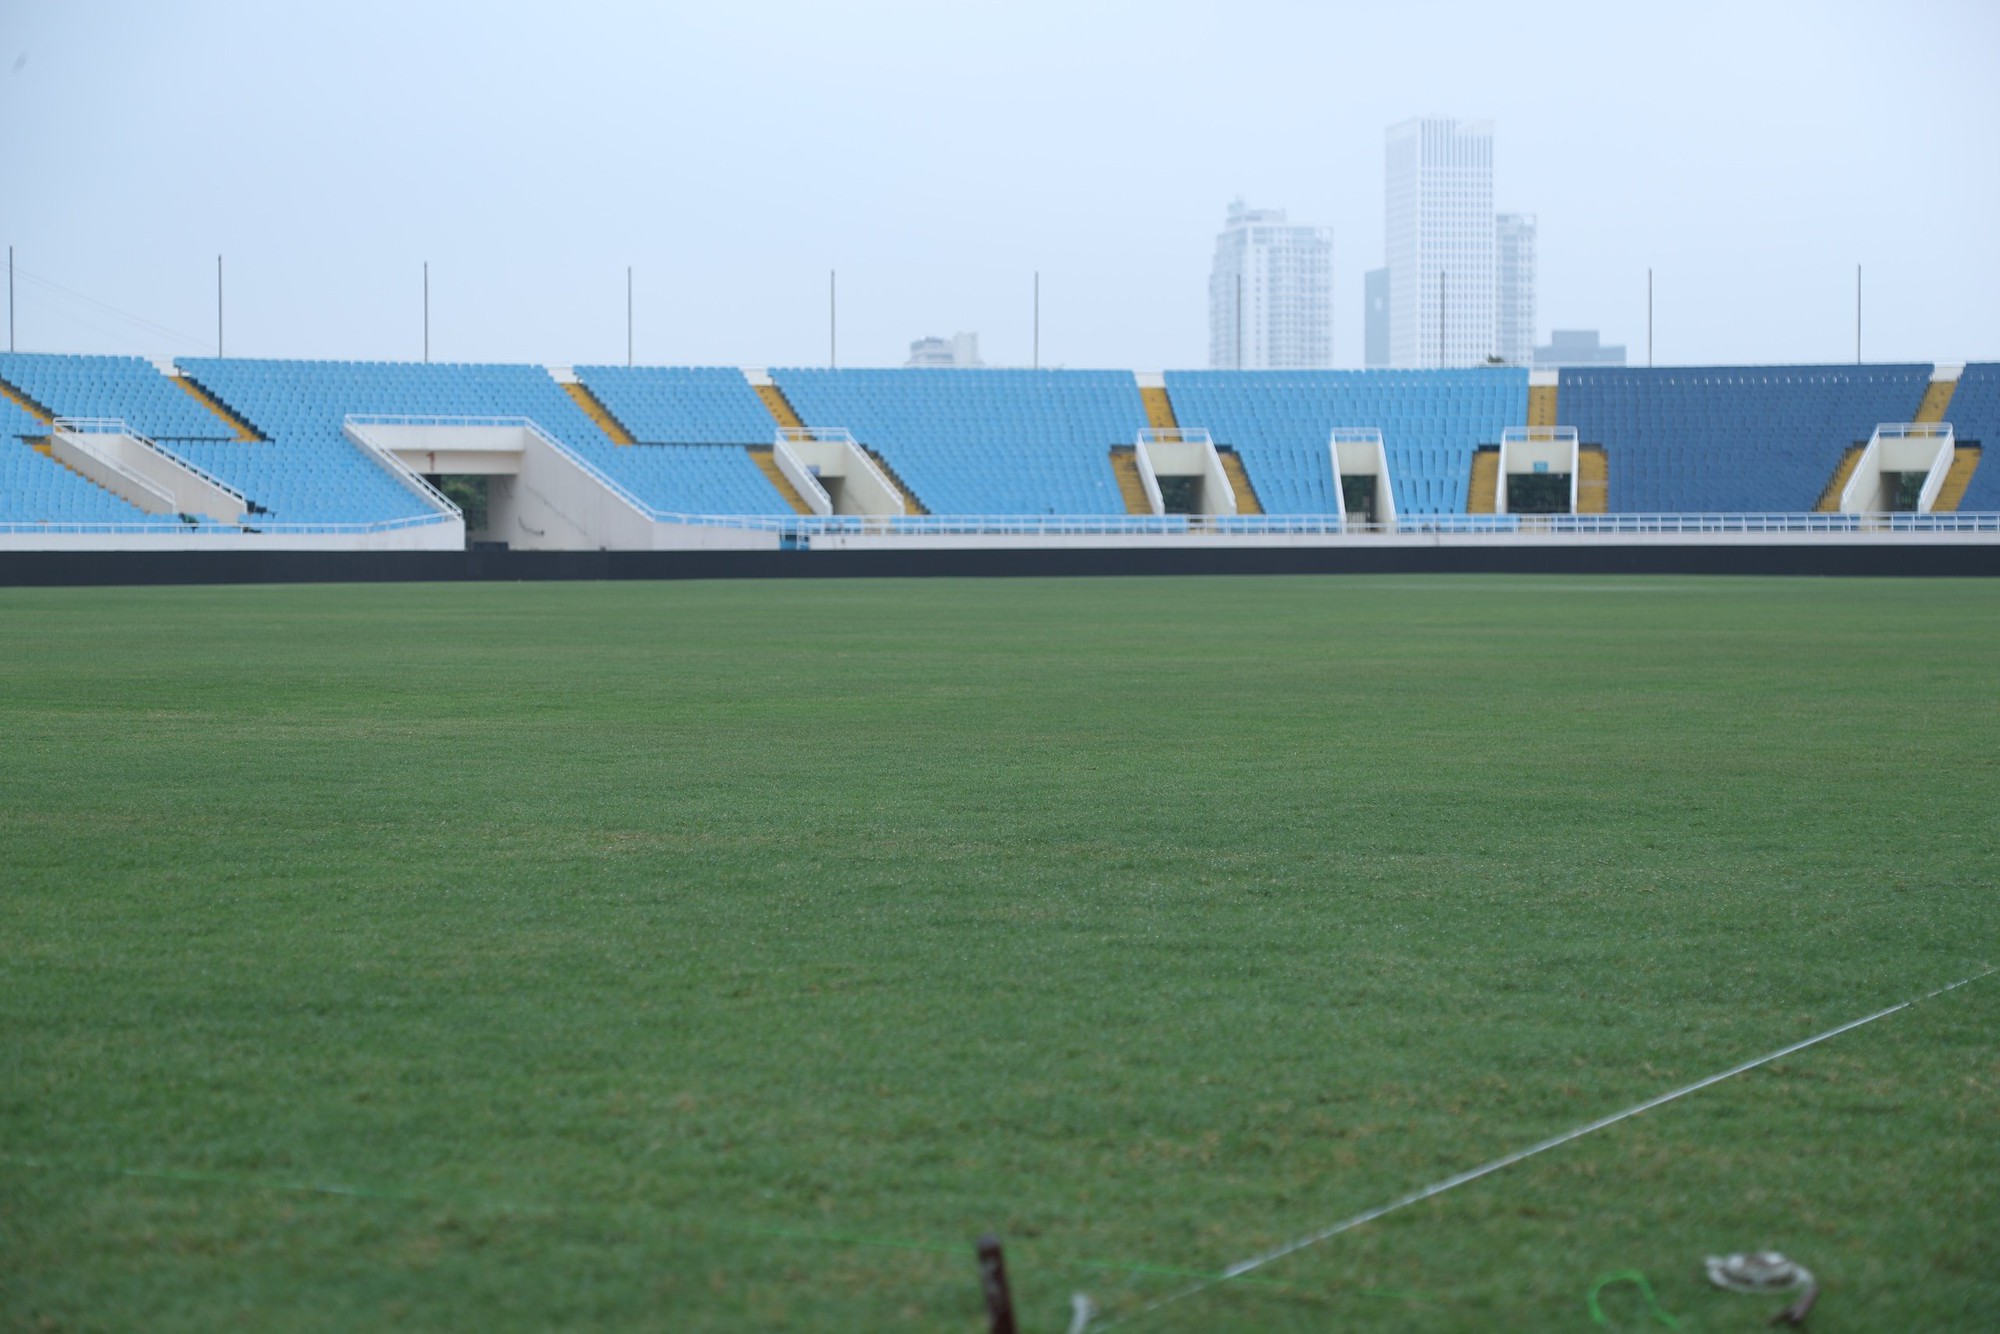 Sân Mỹ Đình "khoác áo mới" trước trận đấu của ĐT Việt Nam- Ảnh 6.